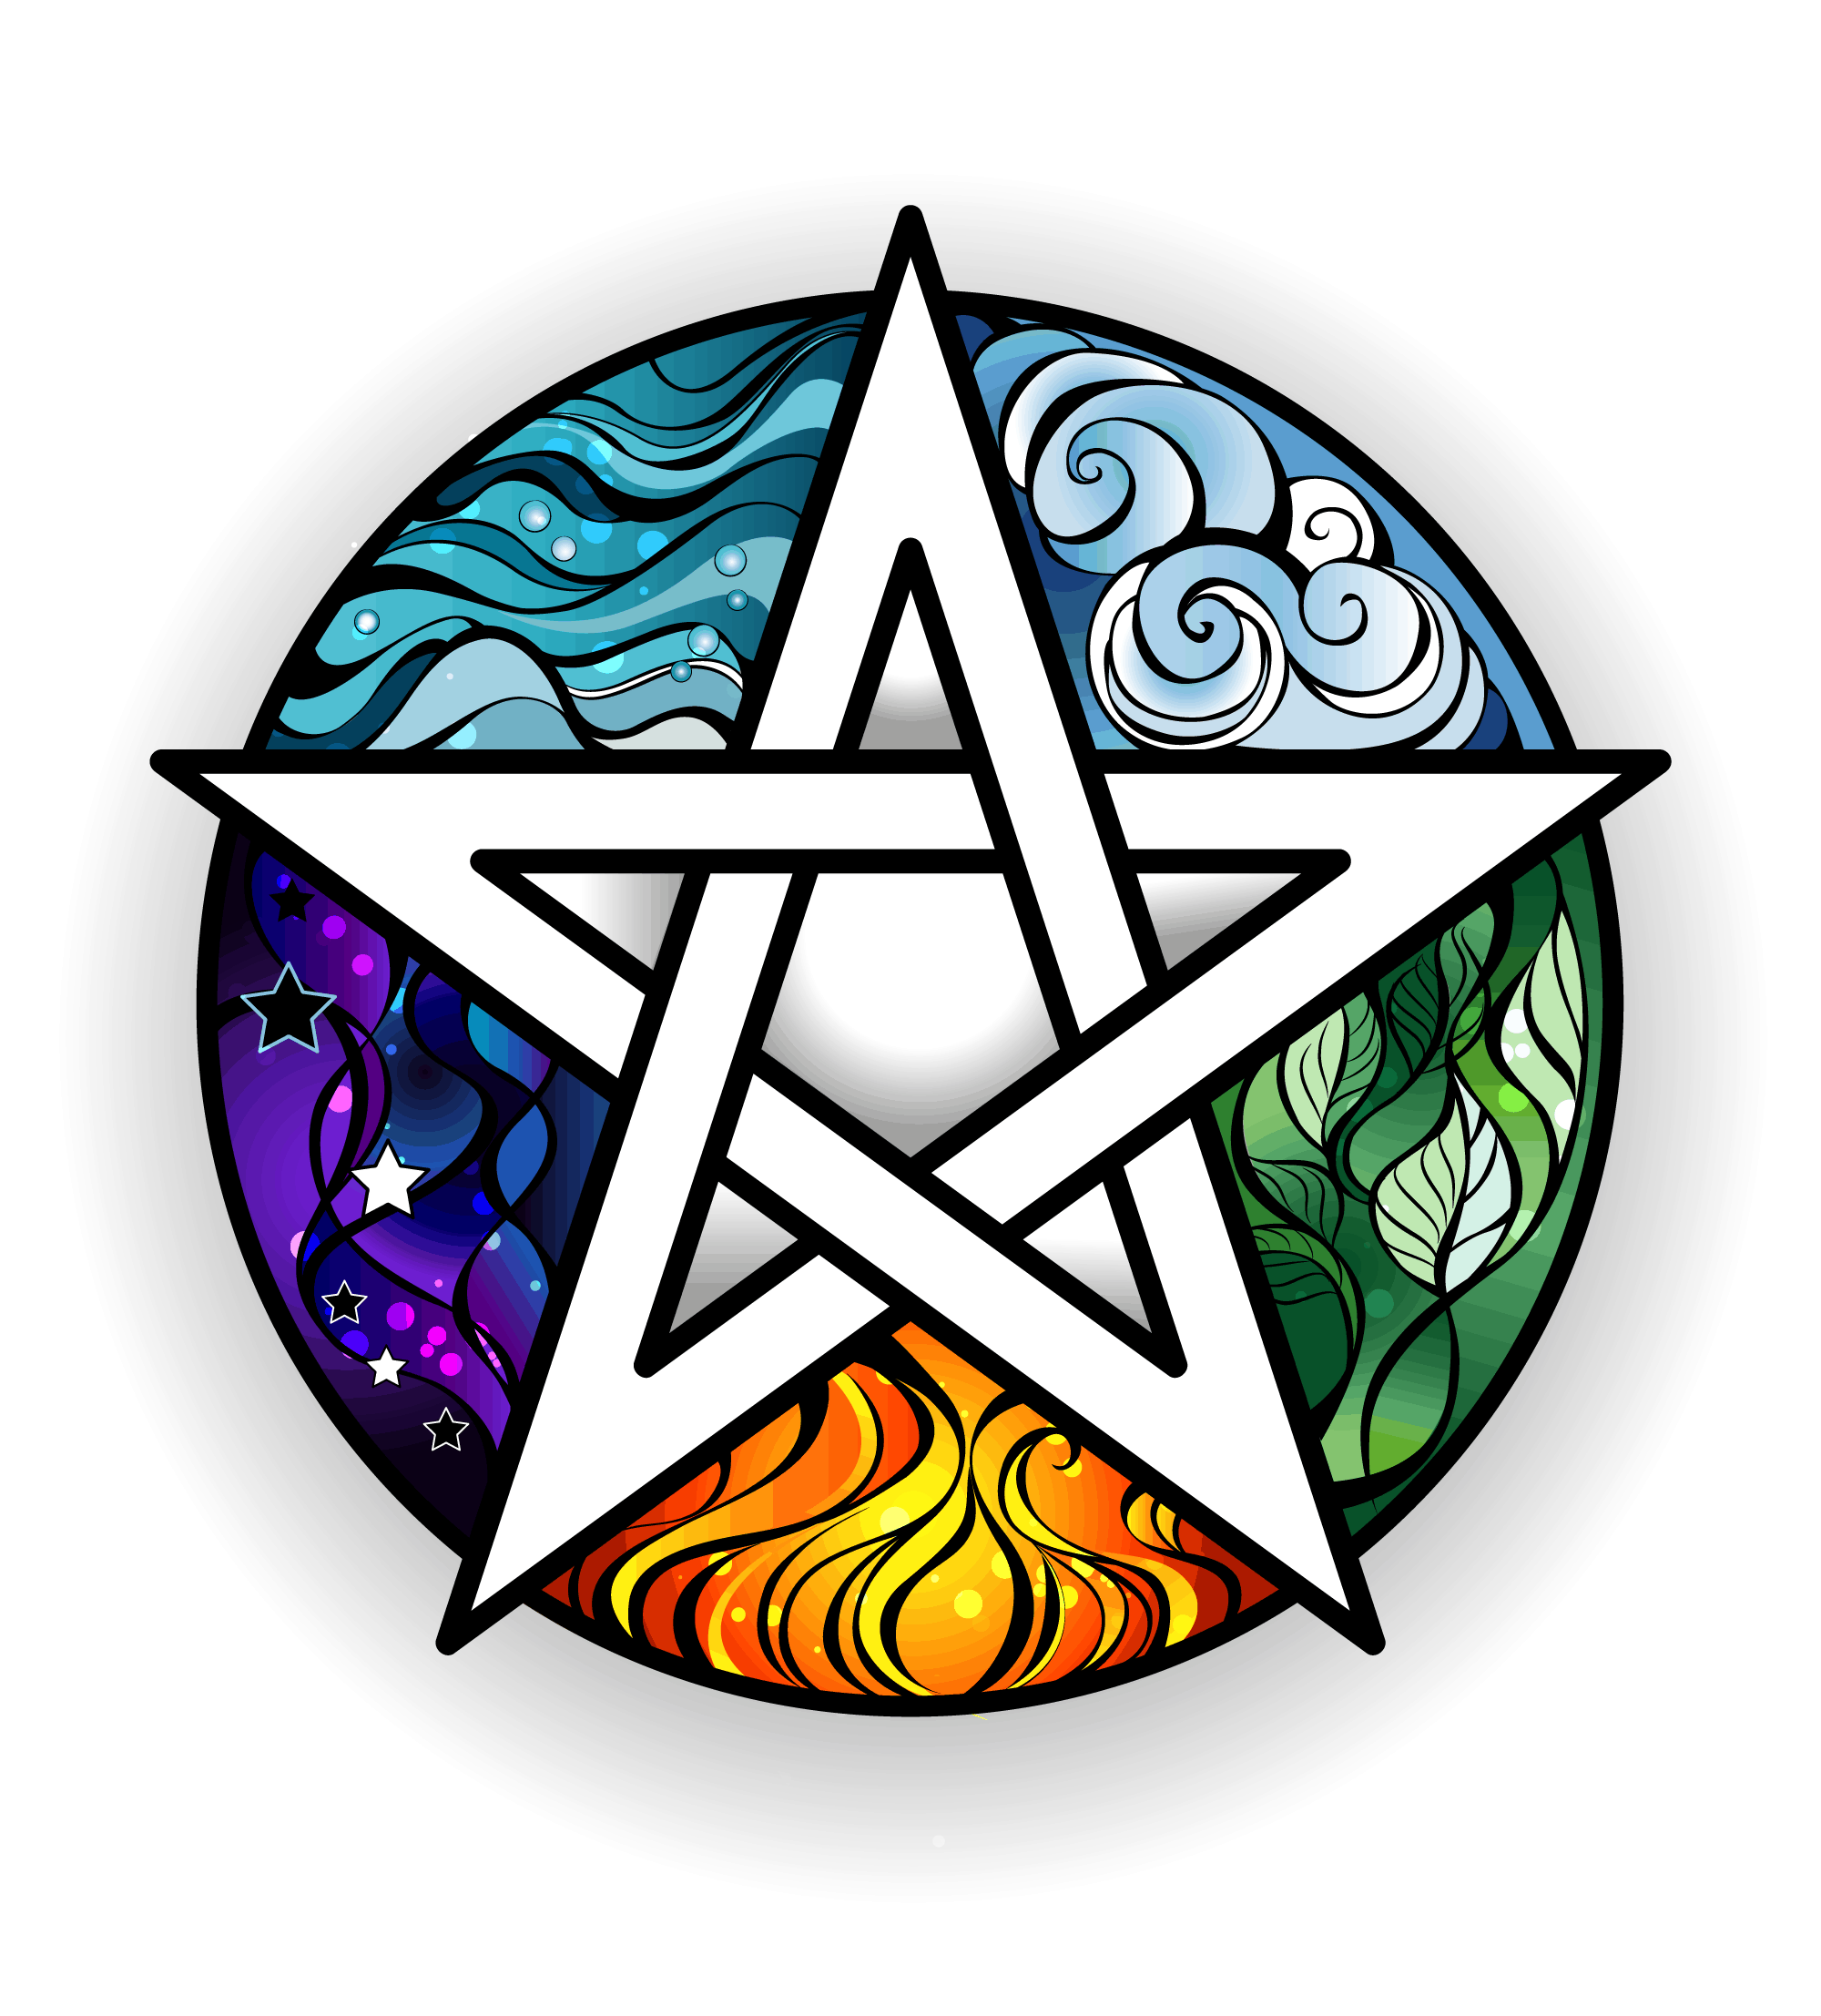 Significado y origen del pentagrama de brujería explicado